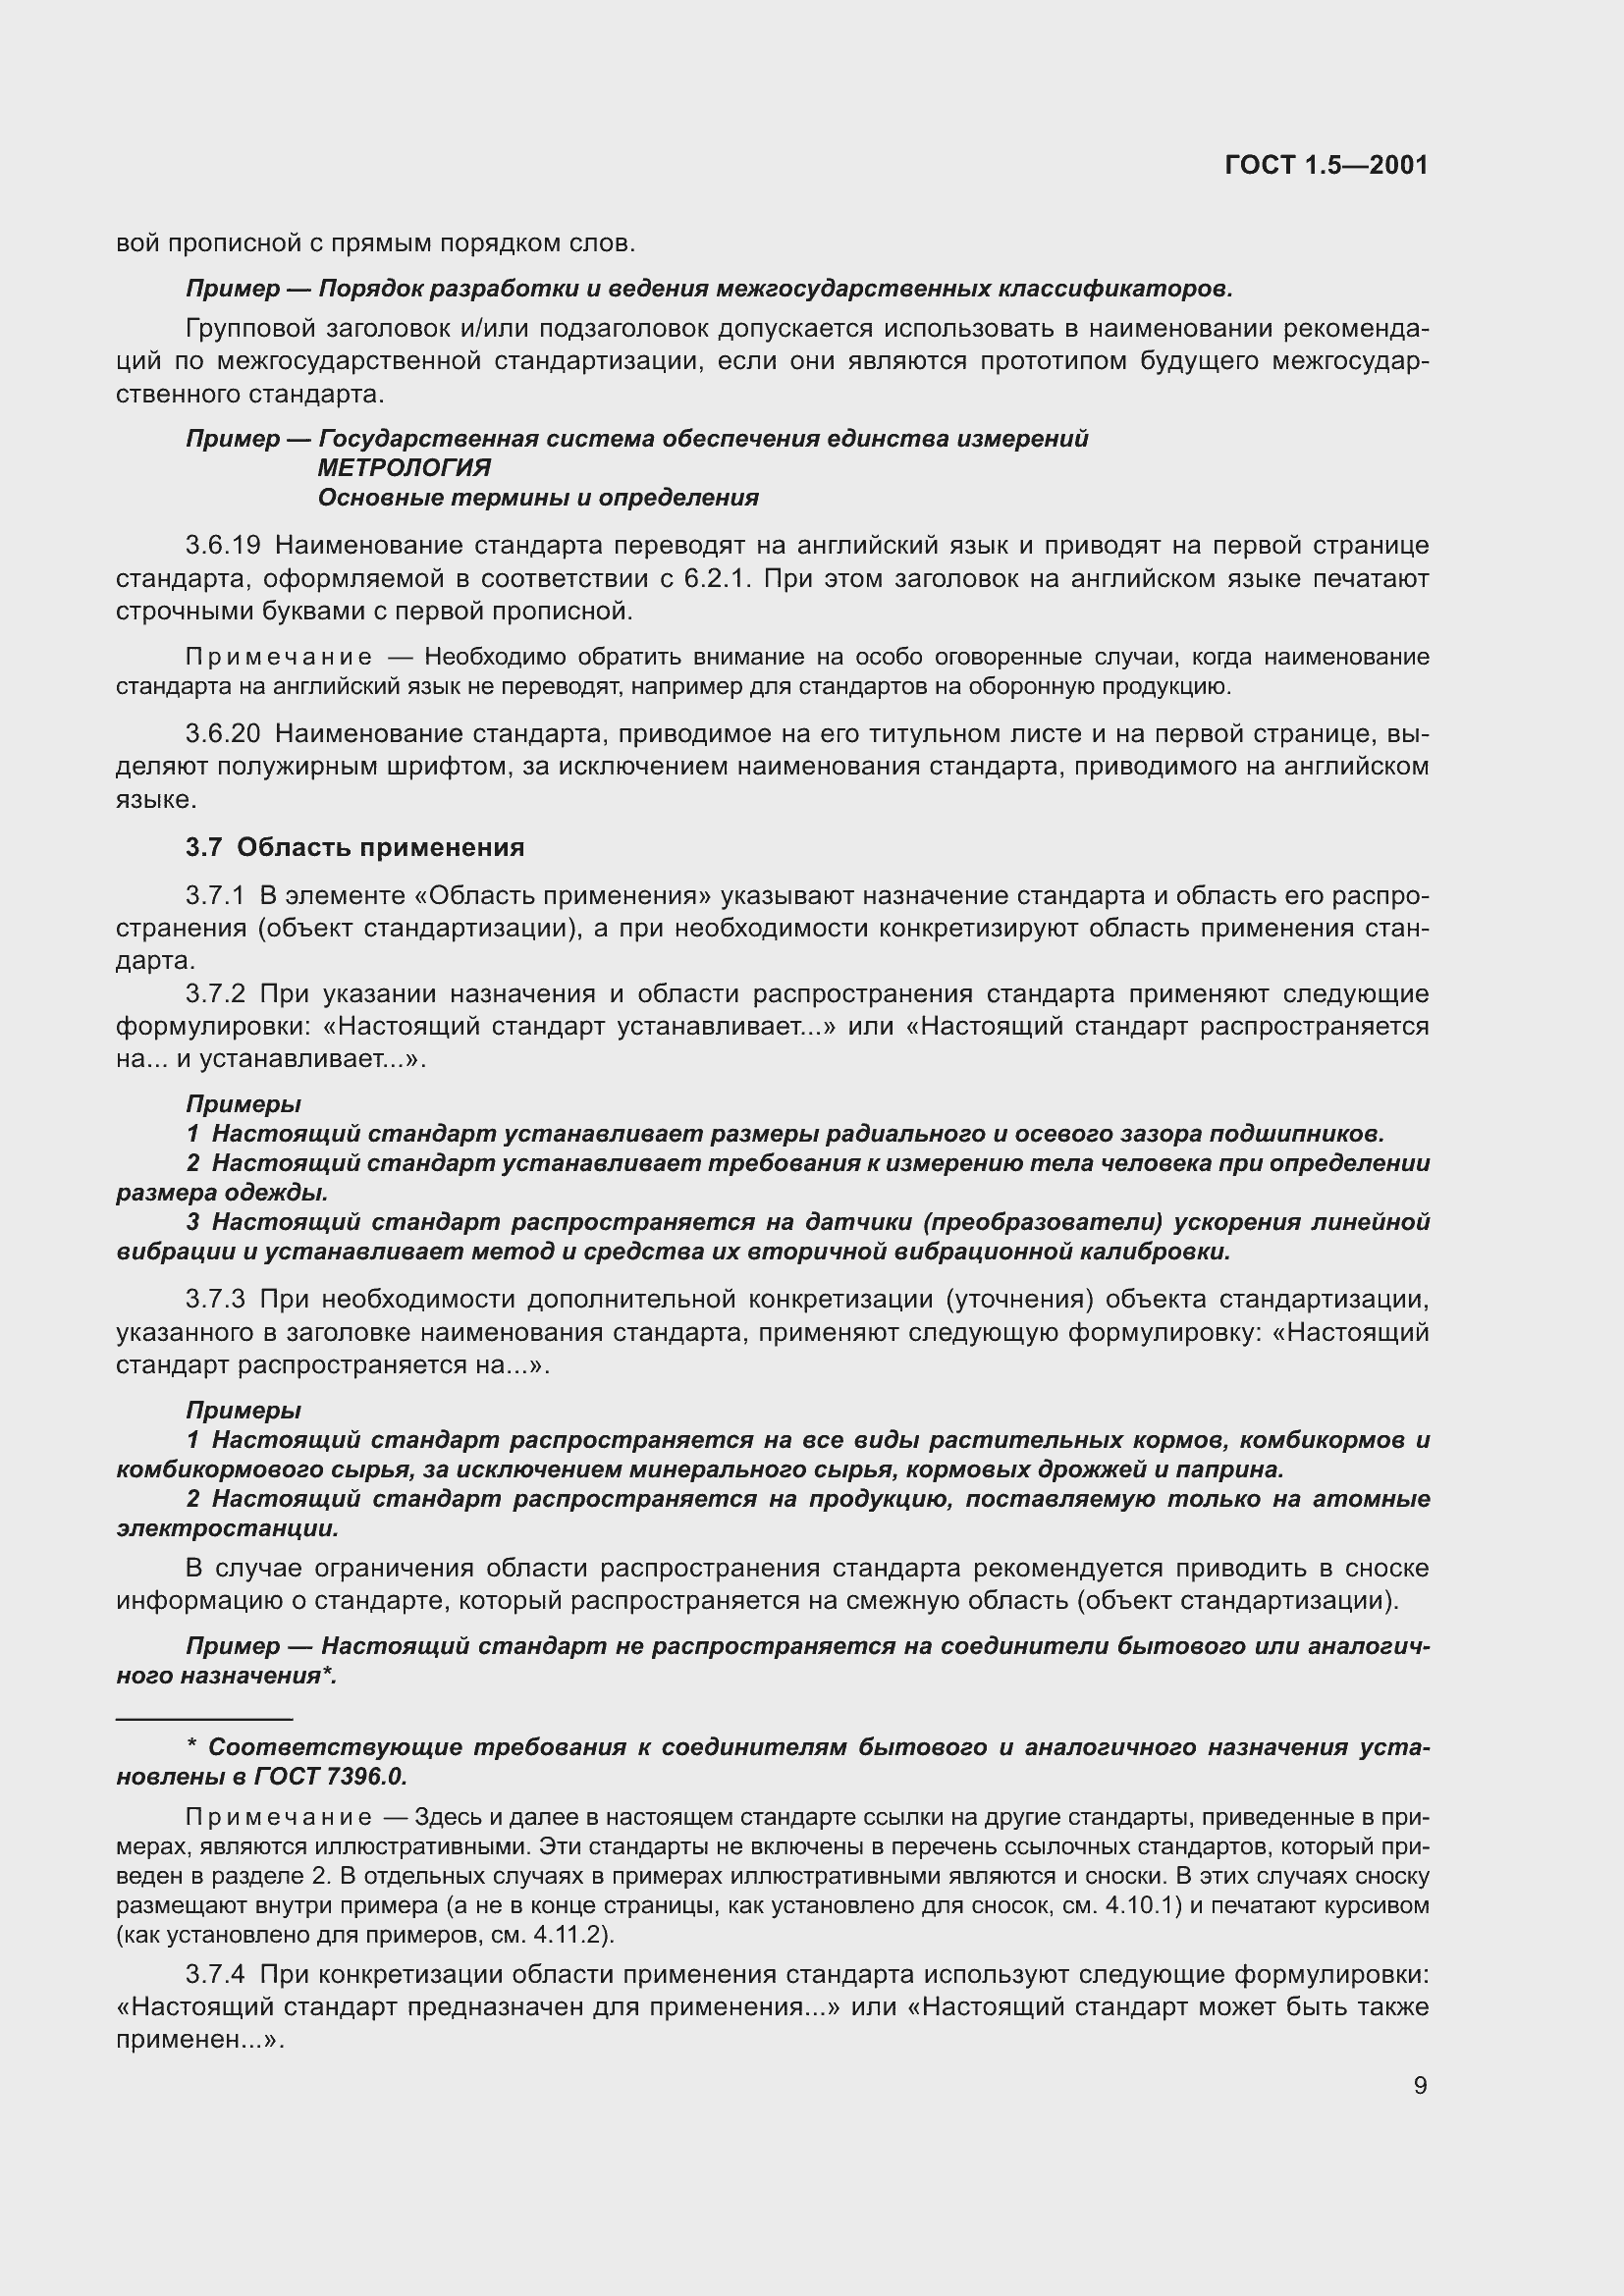 ГОСТ 1.5-2001. Страница 15